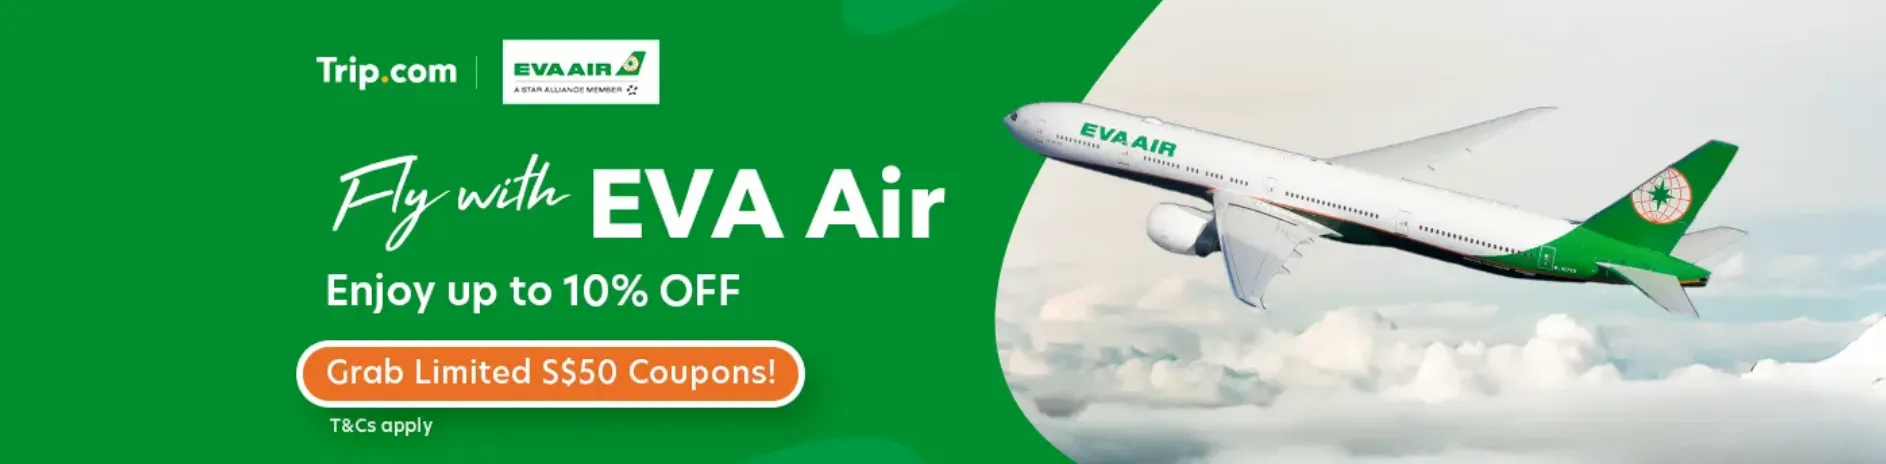 Trip.com Promo Code Singapore: Fly with EVA Air